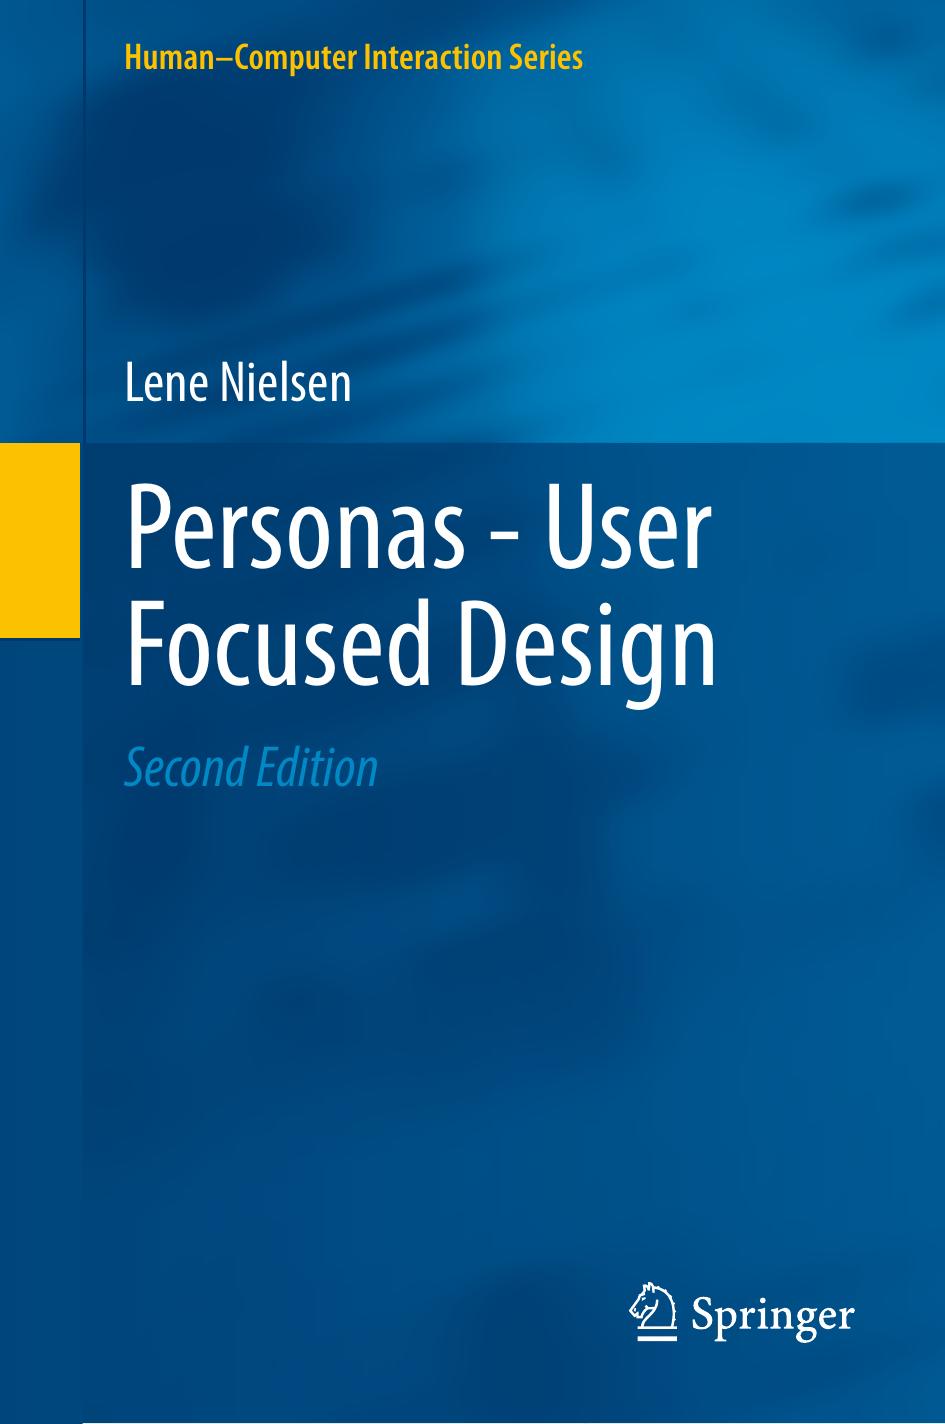 Personas - User Focused Design by Lene Nielsen